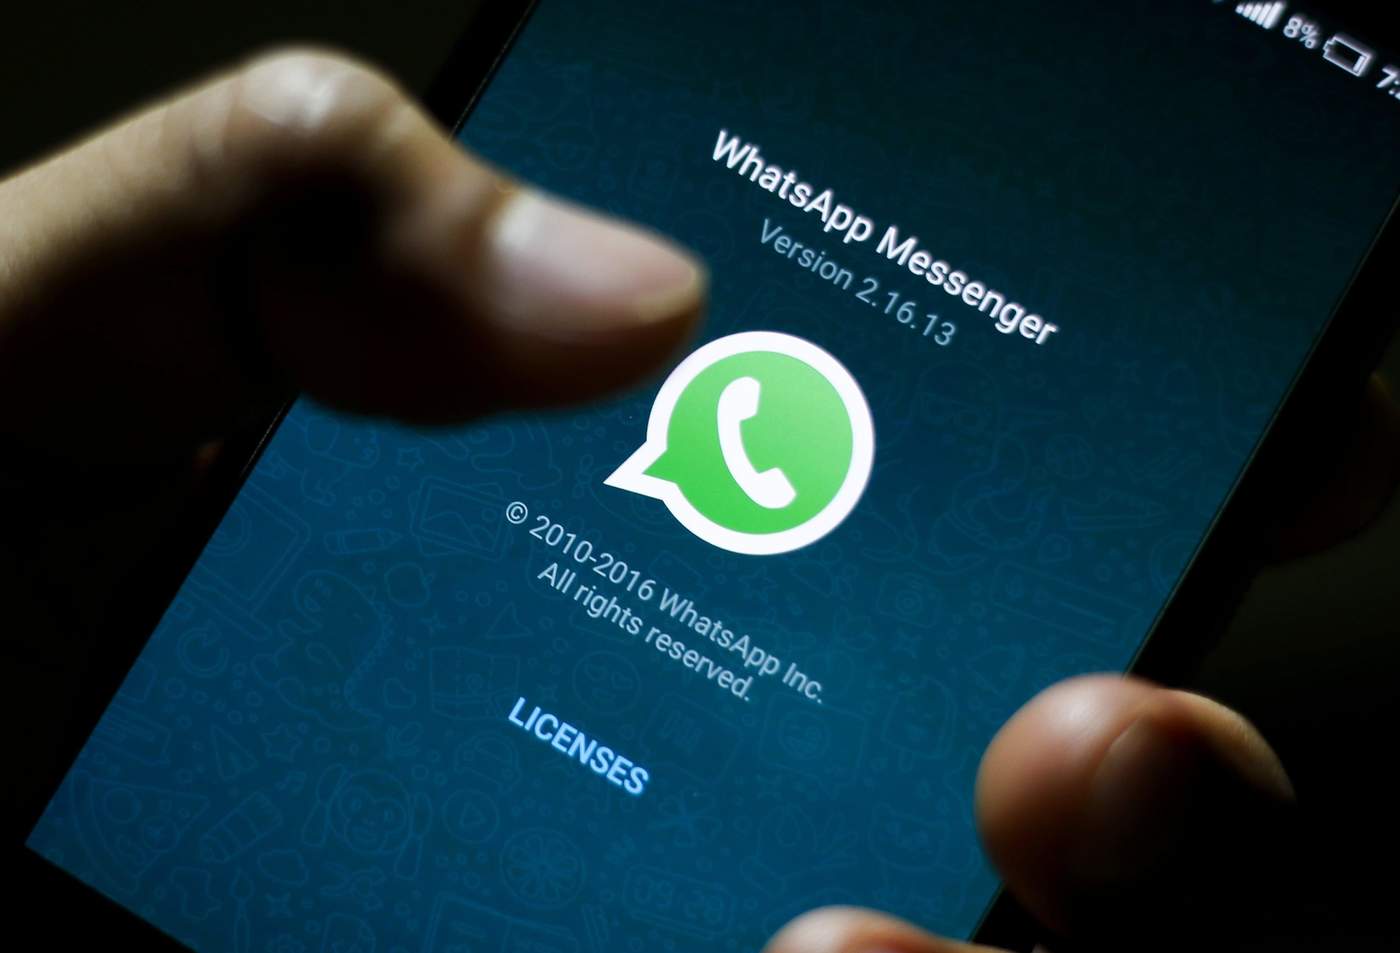 Usuarios de distintas partes del mundo reportaron problemas para acceder a la aplicación de mensajería de WhatsApp. (ARCHIVO)